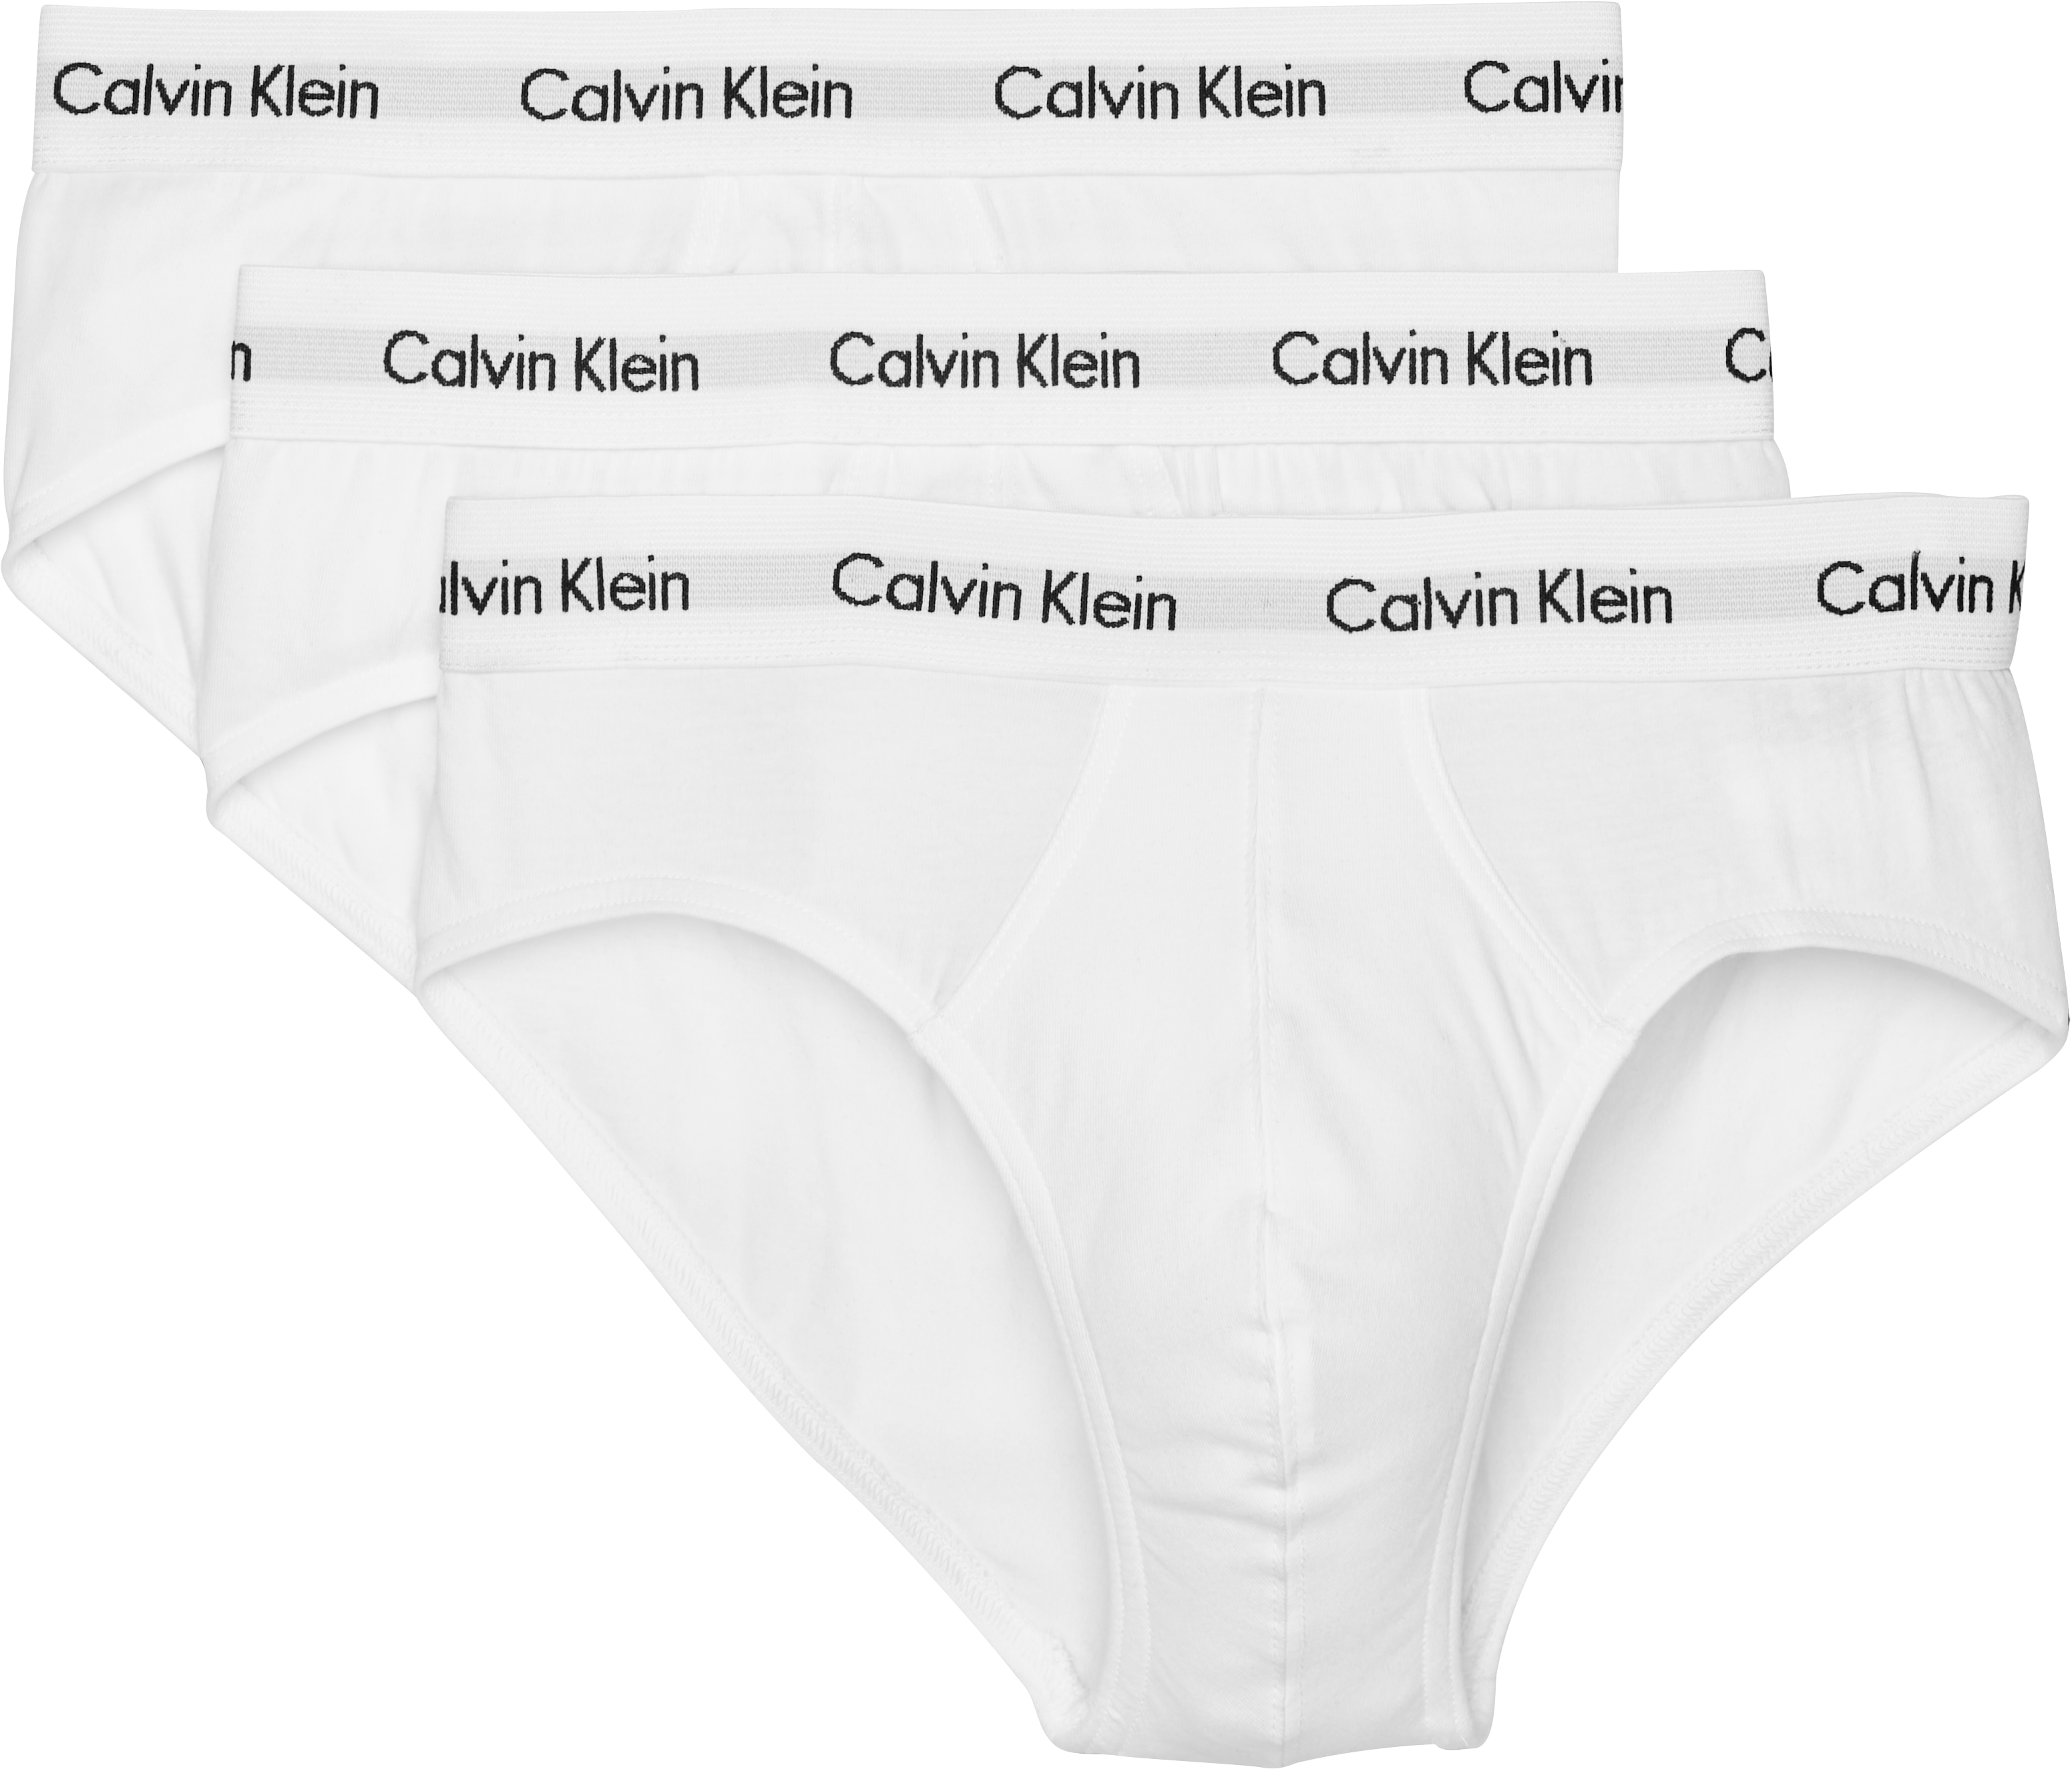 Calvin Klein Classic Fit Cotton Briefs, 3-Pack, White - Men's Accessories |  Men's Wearhouse